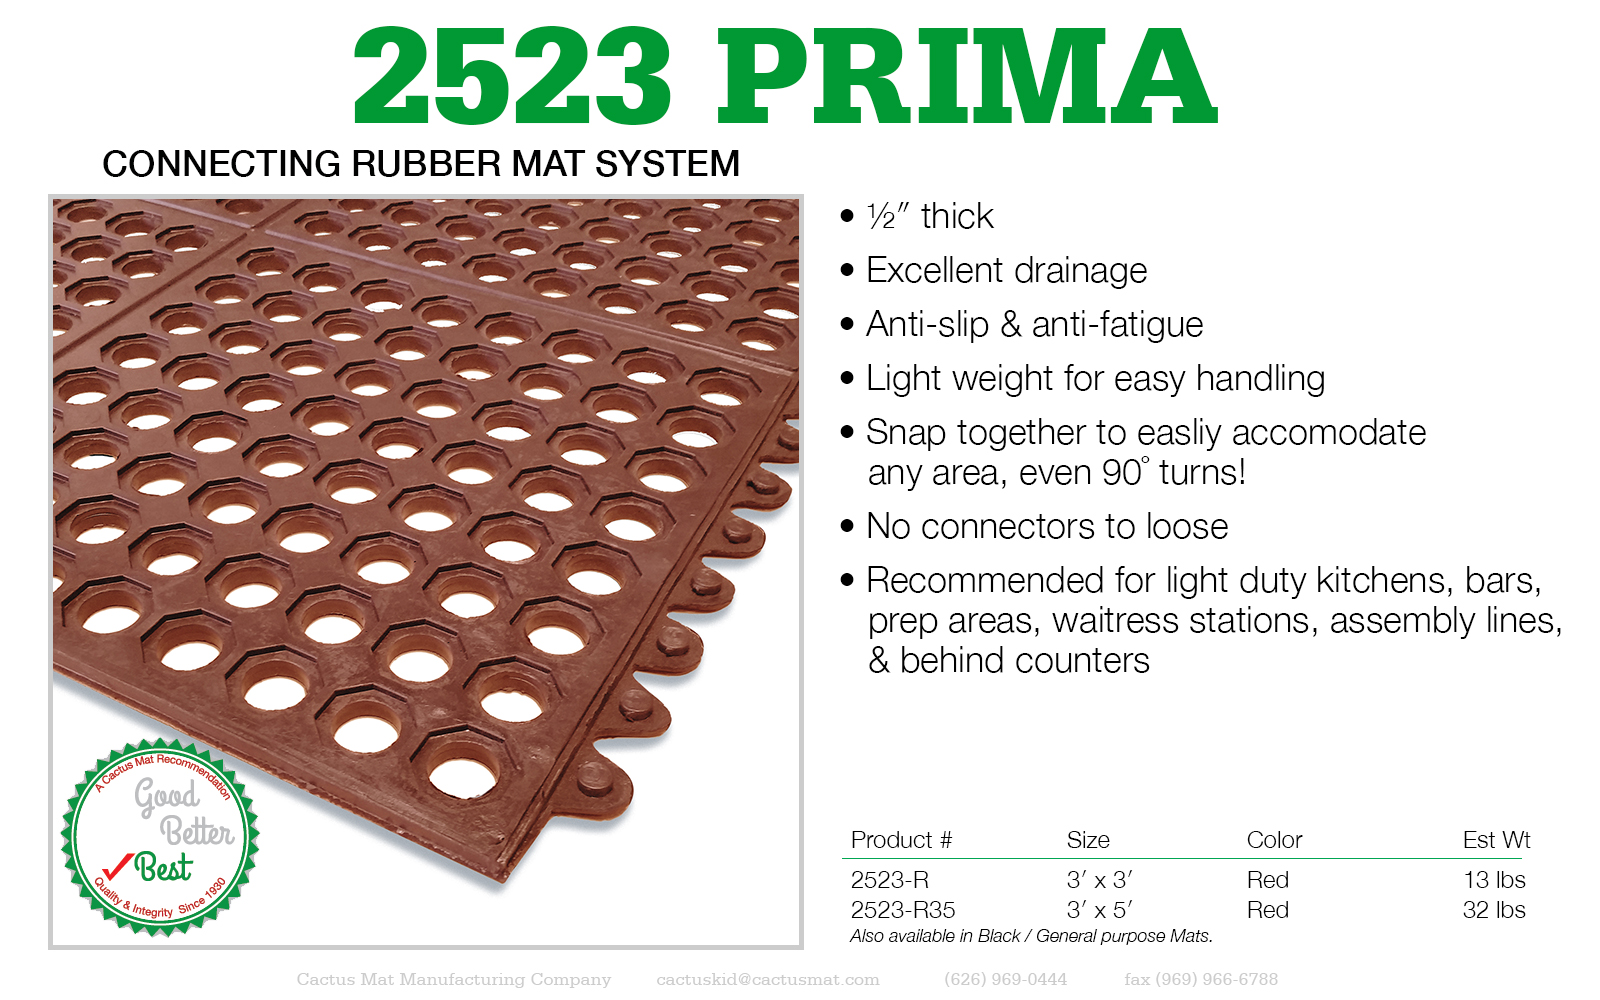 Cactus Mat 2523-R35 Red VIP Prima 3' x 5' Floor Mat